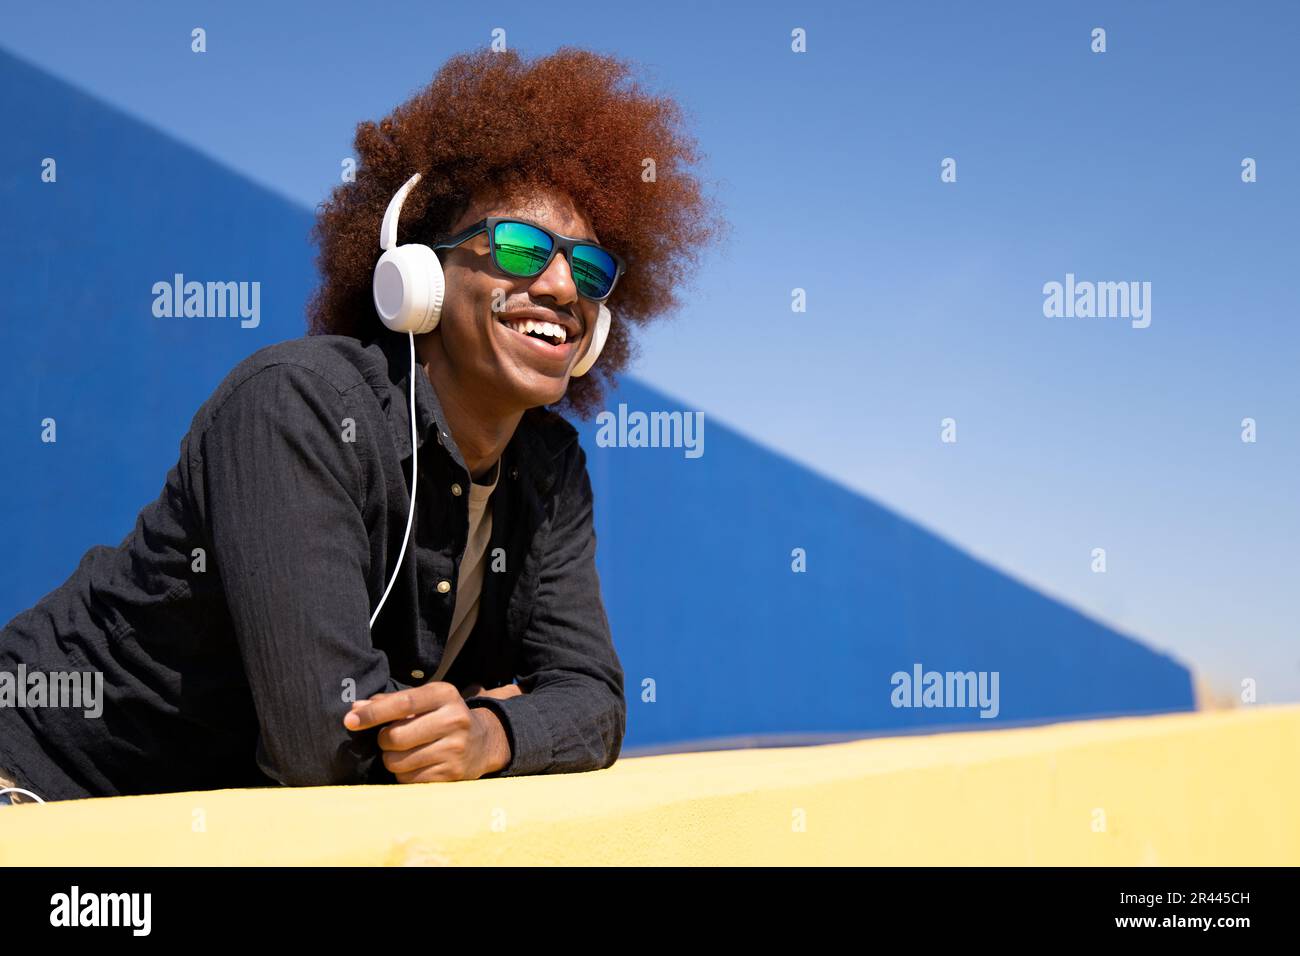 Vista laterale di un giovane uomo gioioso in piedi su una parete che indossa occhiali da sole Foto Stock